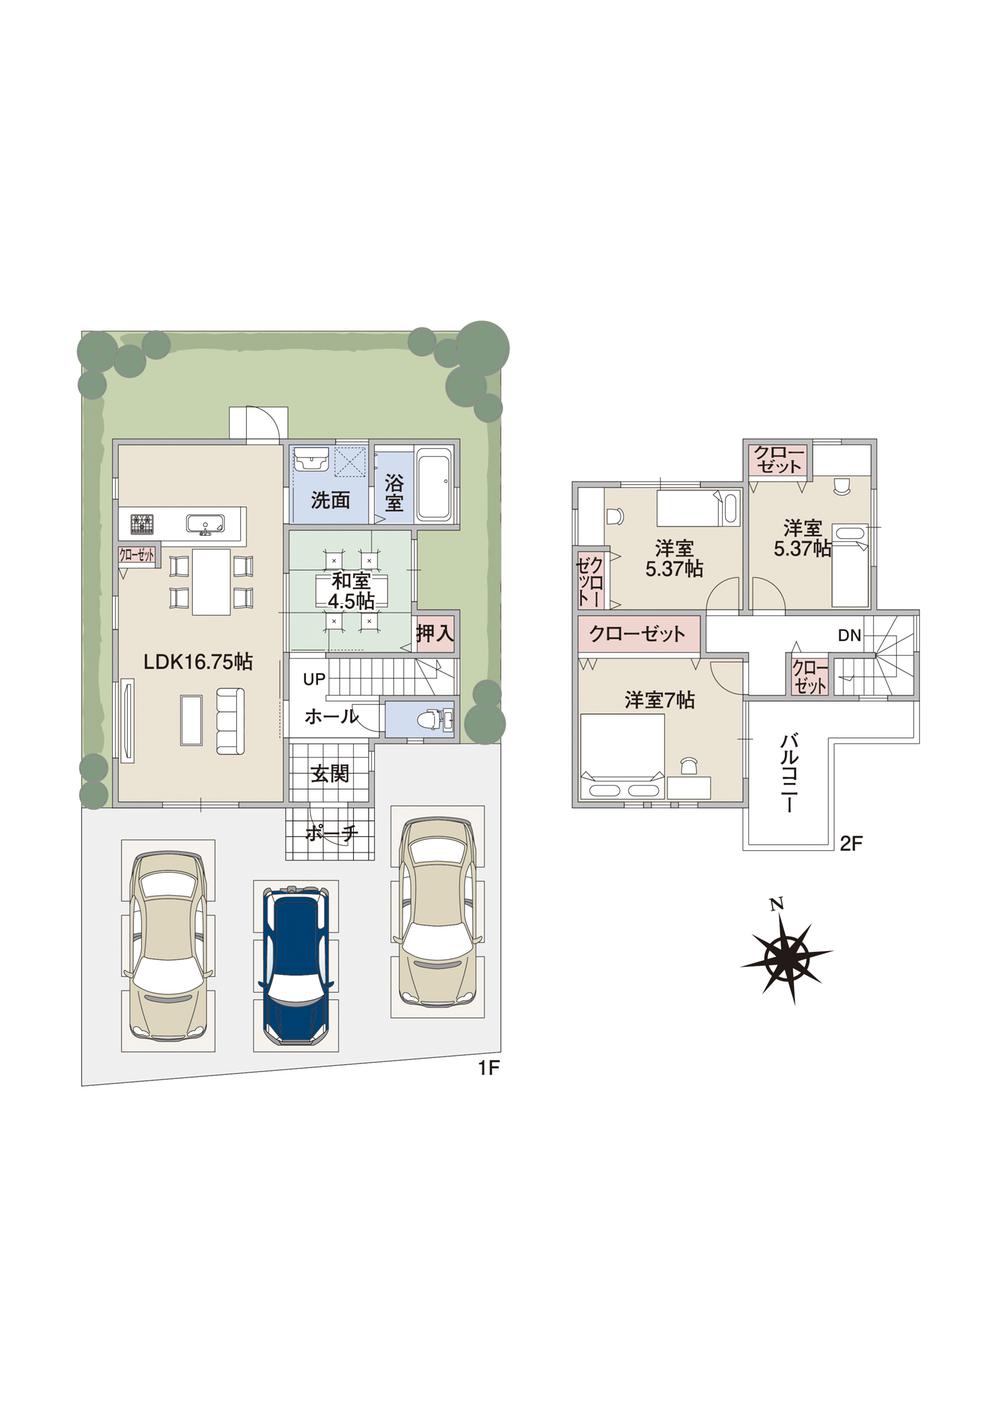 Building plan example (floor plan). Building plan example (No. 1 land A plan) 4LDK, Land price 15,331,000 yen, Land area 115.71 sq m , Building price 15,446,000 yen, Building area 91.53 sq m